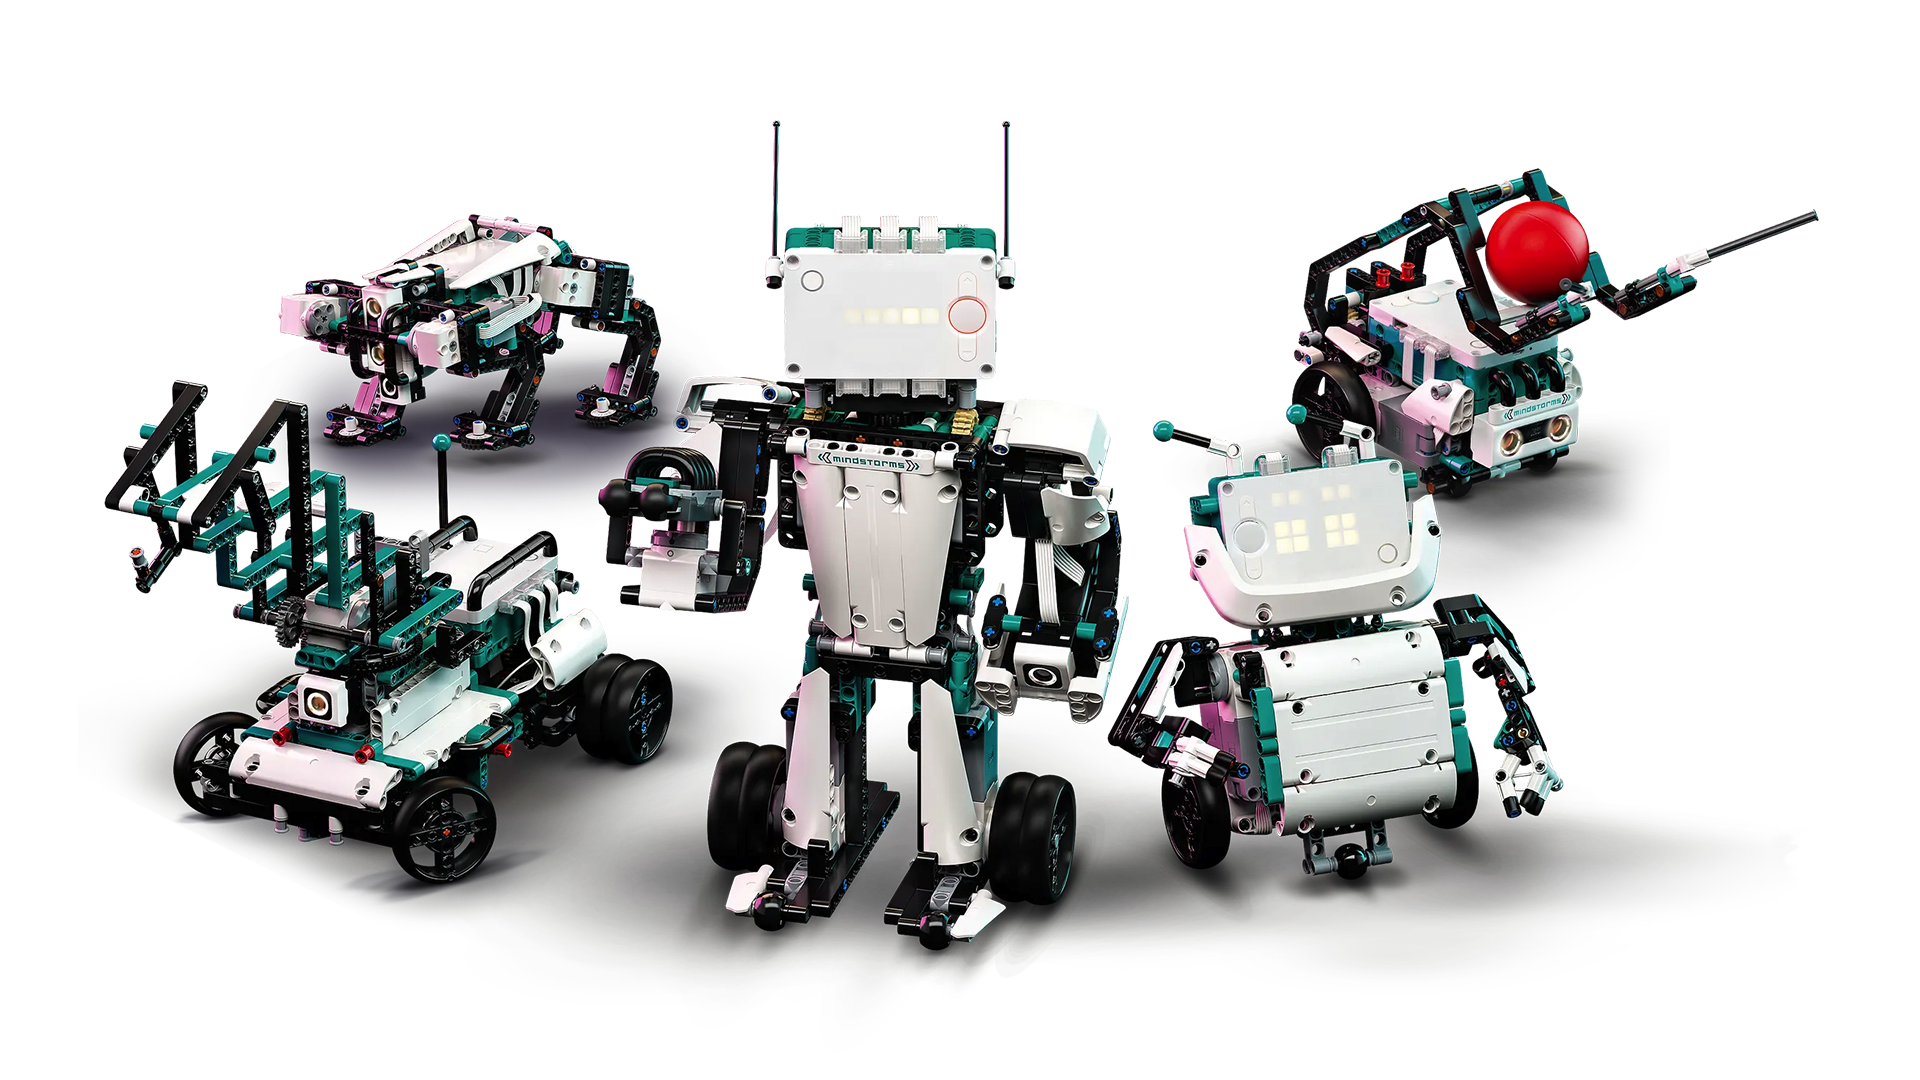 LEGO Discontinues MINDSTORMS, Its Original Robotics Platform